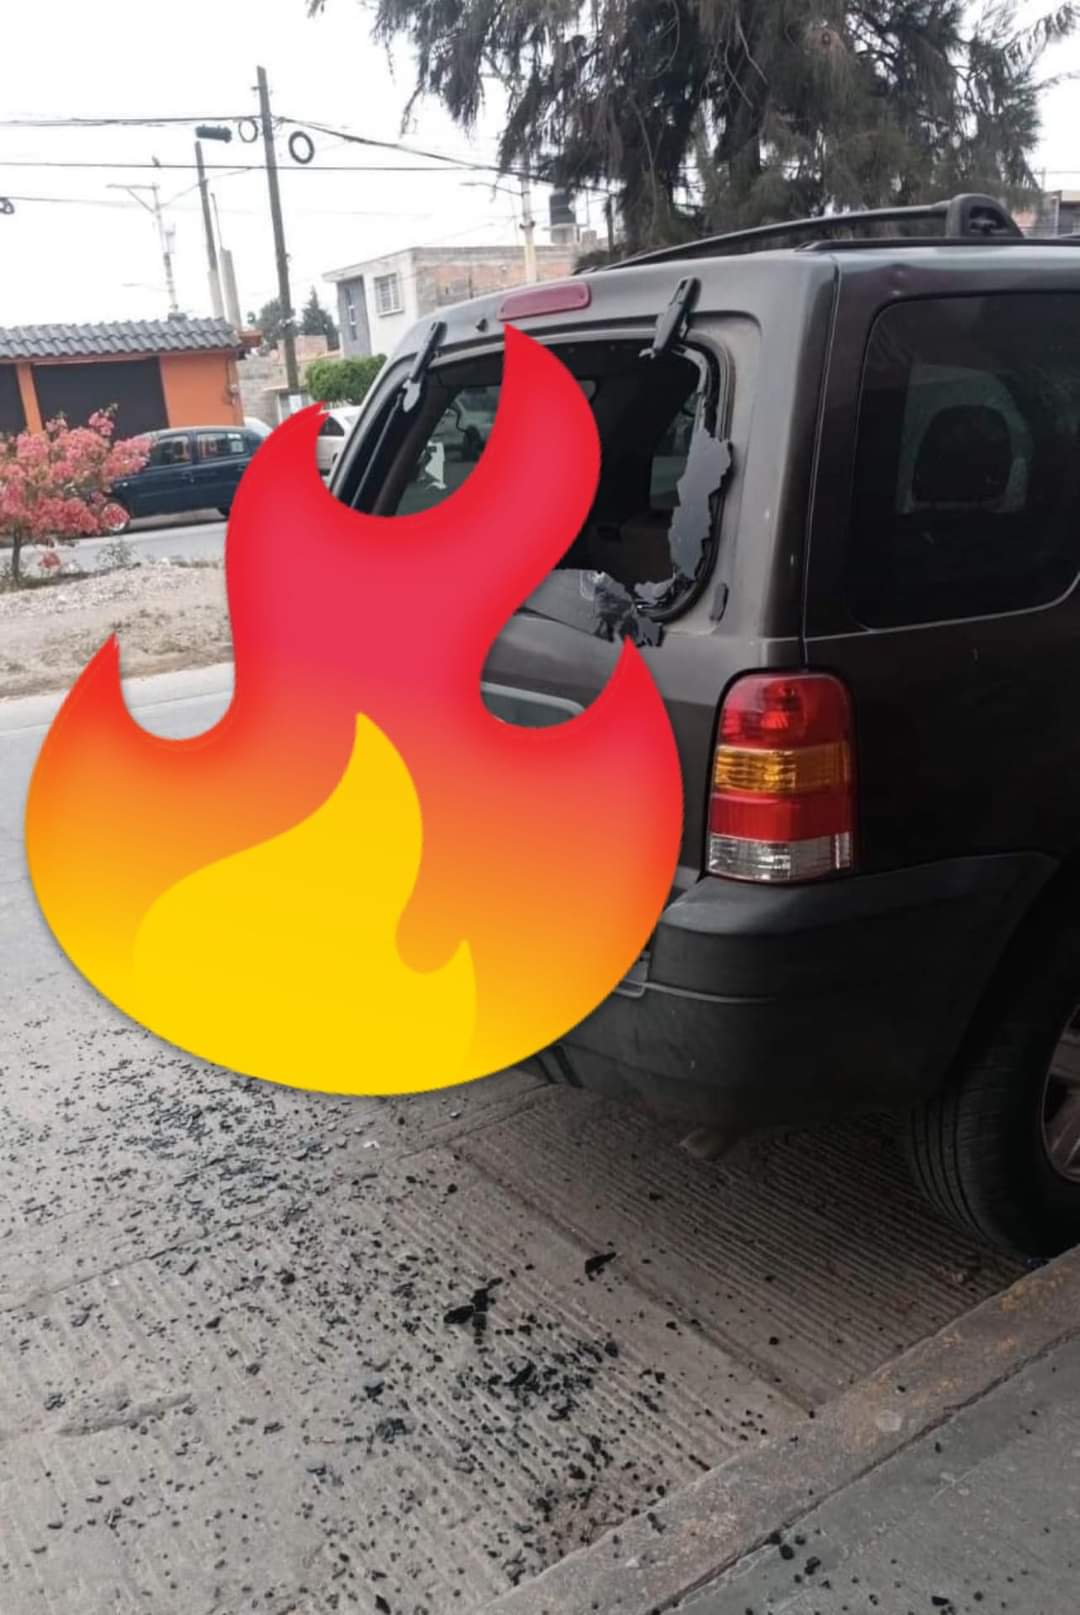 Esta mañana en la colonia Ponciano Arriaga ubicada al norte de la ciudad, sujetos armados rafaguearon una  camioneta y un vehículo.